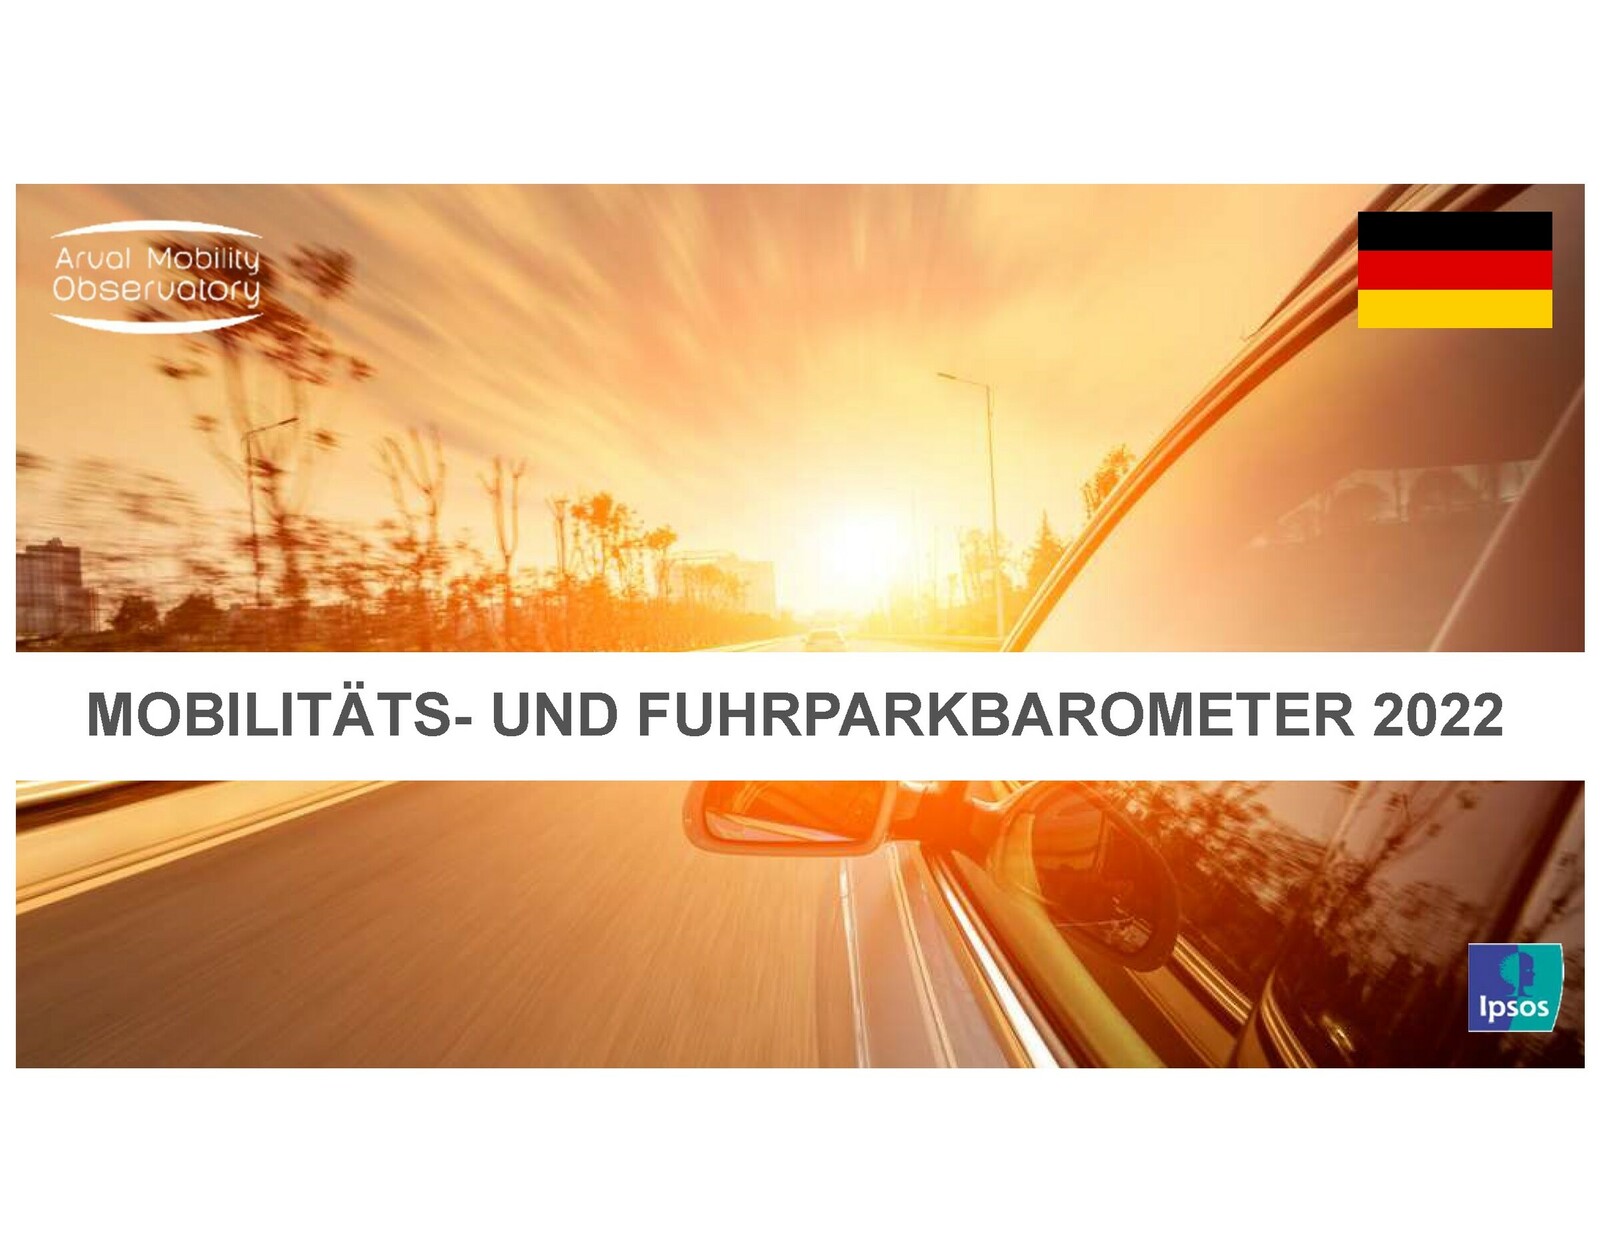 Deutsche Fuhrparks sind resilient, nachhaltig und vielfältig ist das Ergebnis des 18. Ausgabe des Fuhrpark- und Mobilitätsbarometers des Arval Mobility Observatory (AMO). 